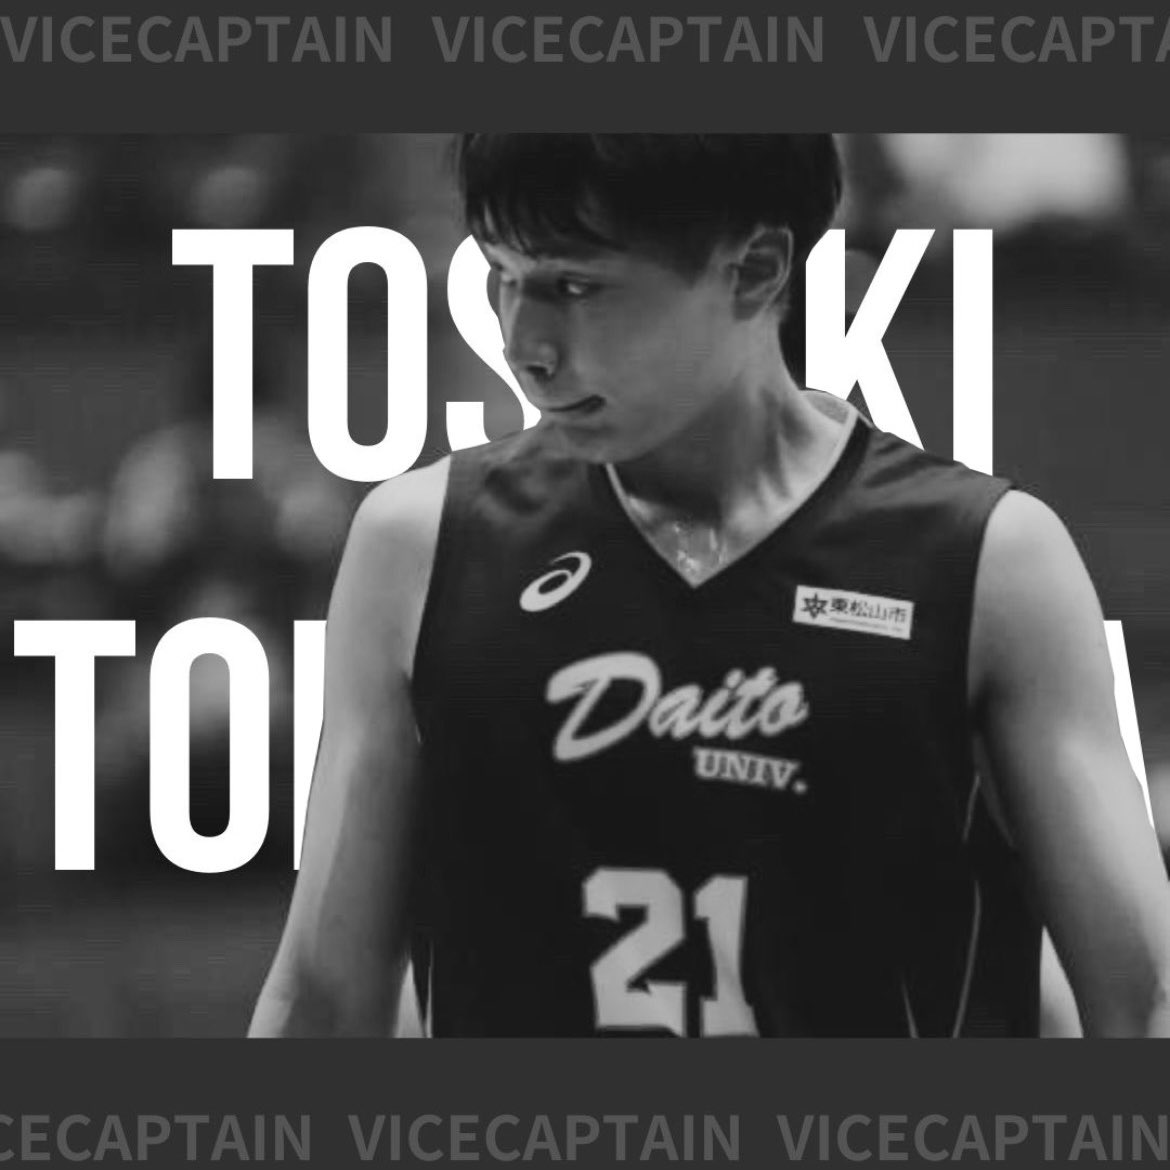 【今シーズン副キャプテン決定！】

今シーズンの副キャプテンが決まりました！

副キャプテンは、、、
🔥#21 富山仁貴🔥
です！

今シーズンも日本一を目指します✊🏻

応援よろしくお願いいたします🙇❤️‍🔥

#daito 
#daitobasketball 
#大東文化大学男子バスケットボール部